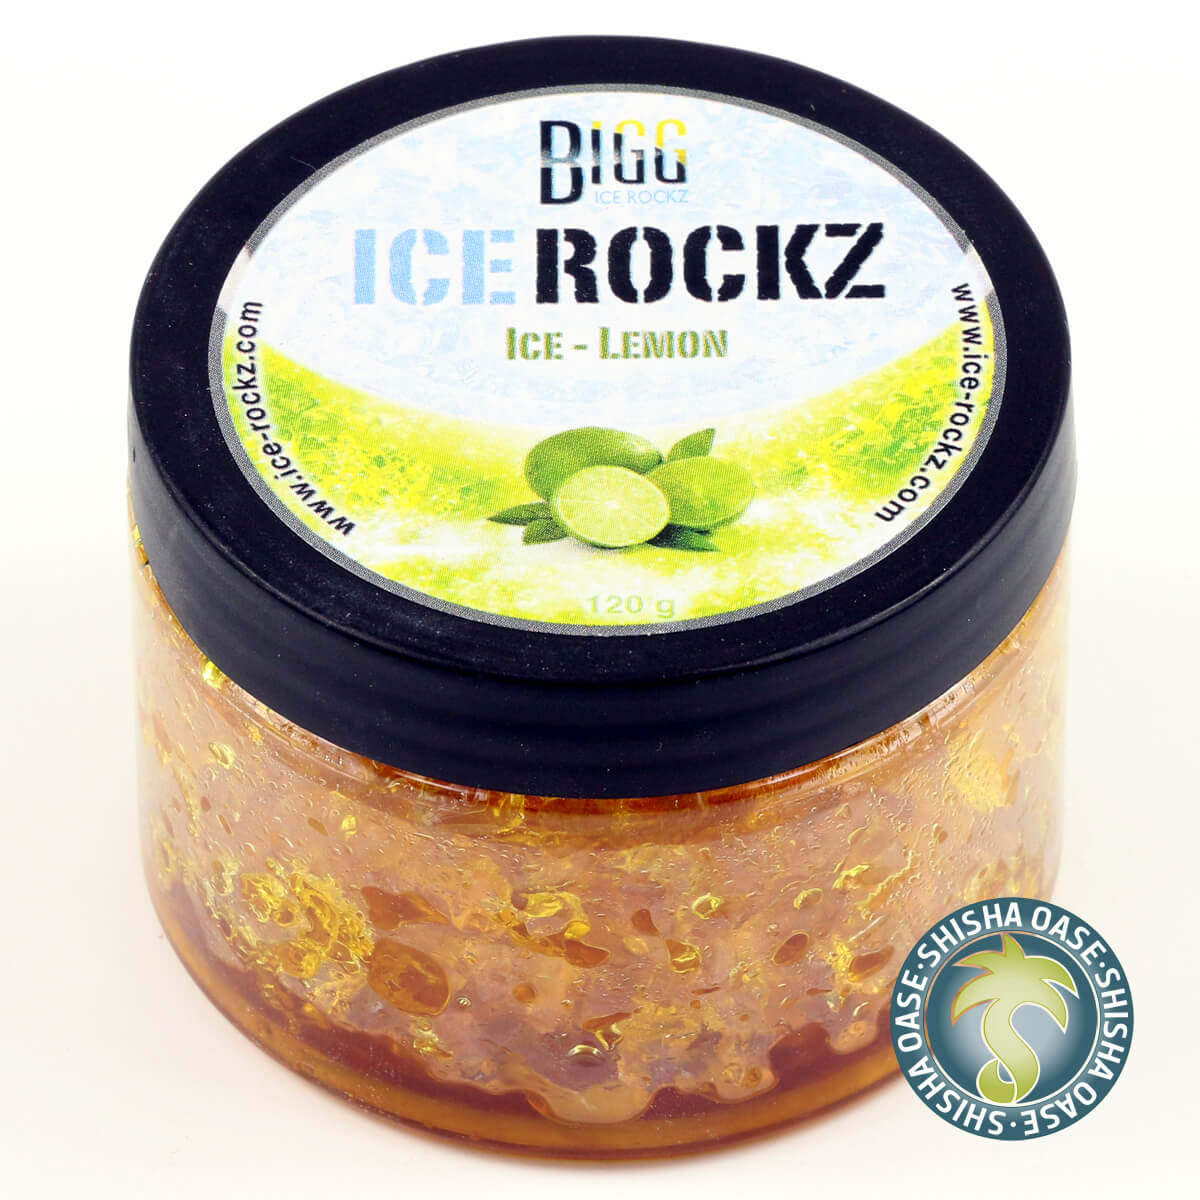 Bigg Ice Rockz - Ice Lemon 120g